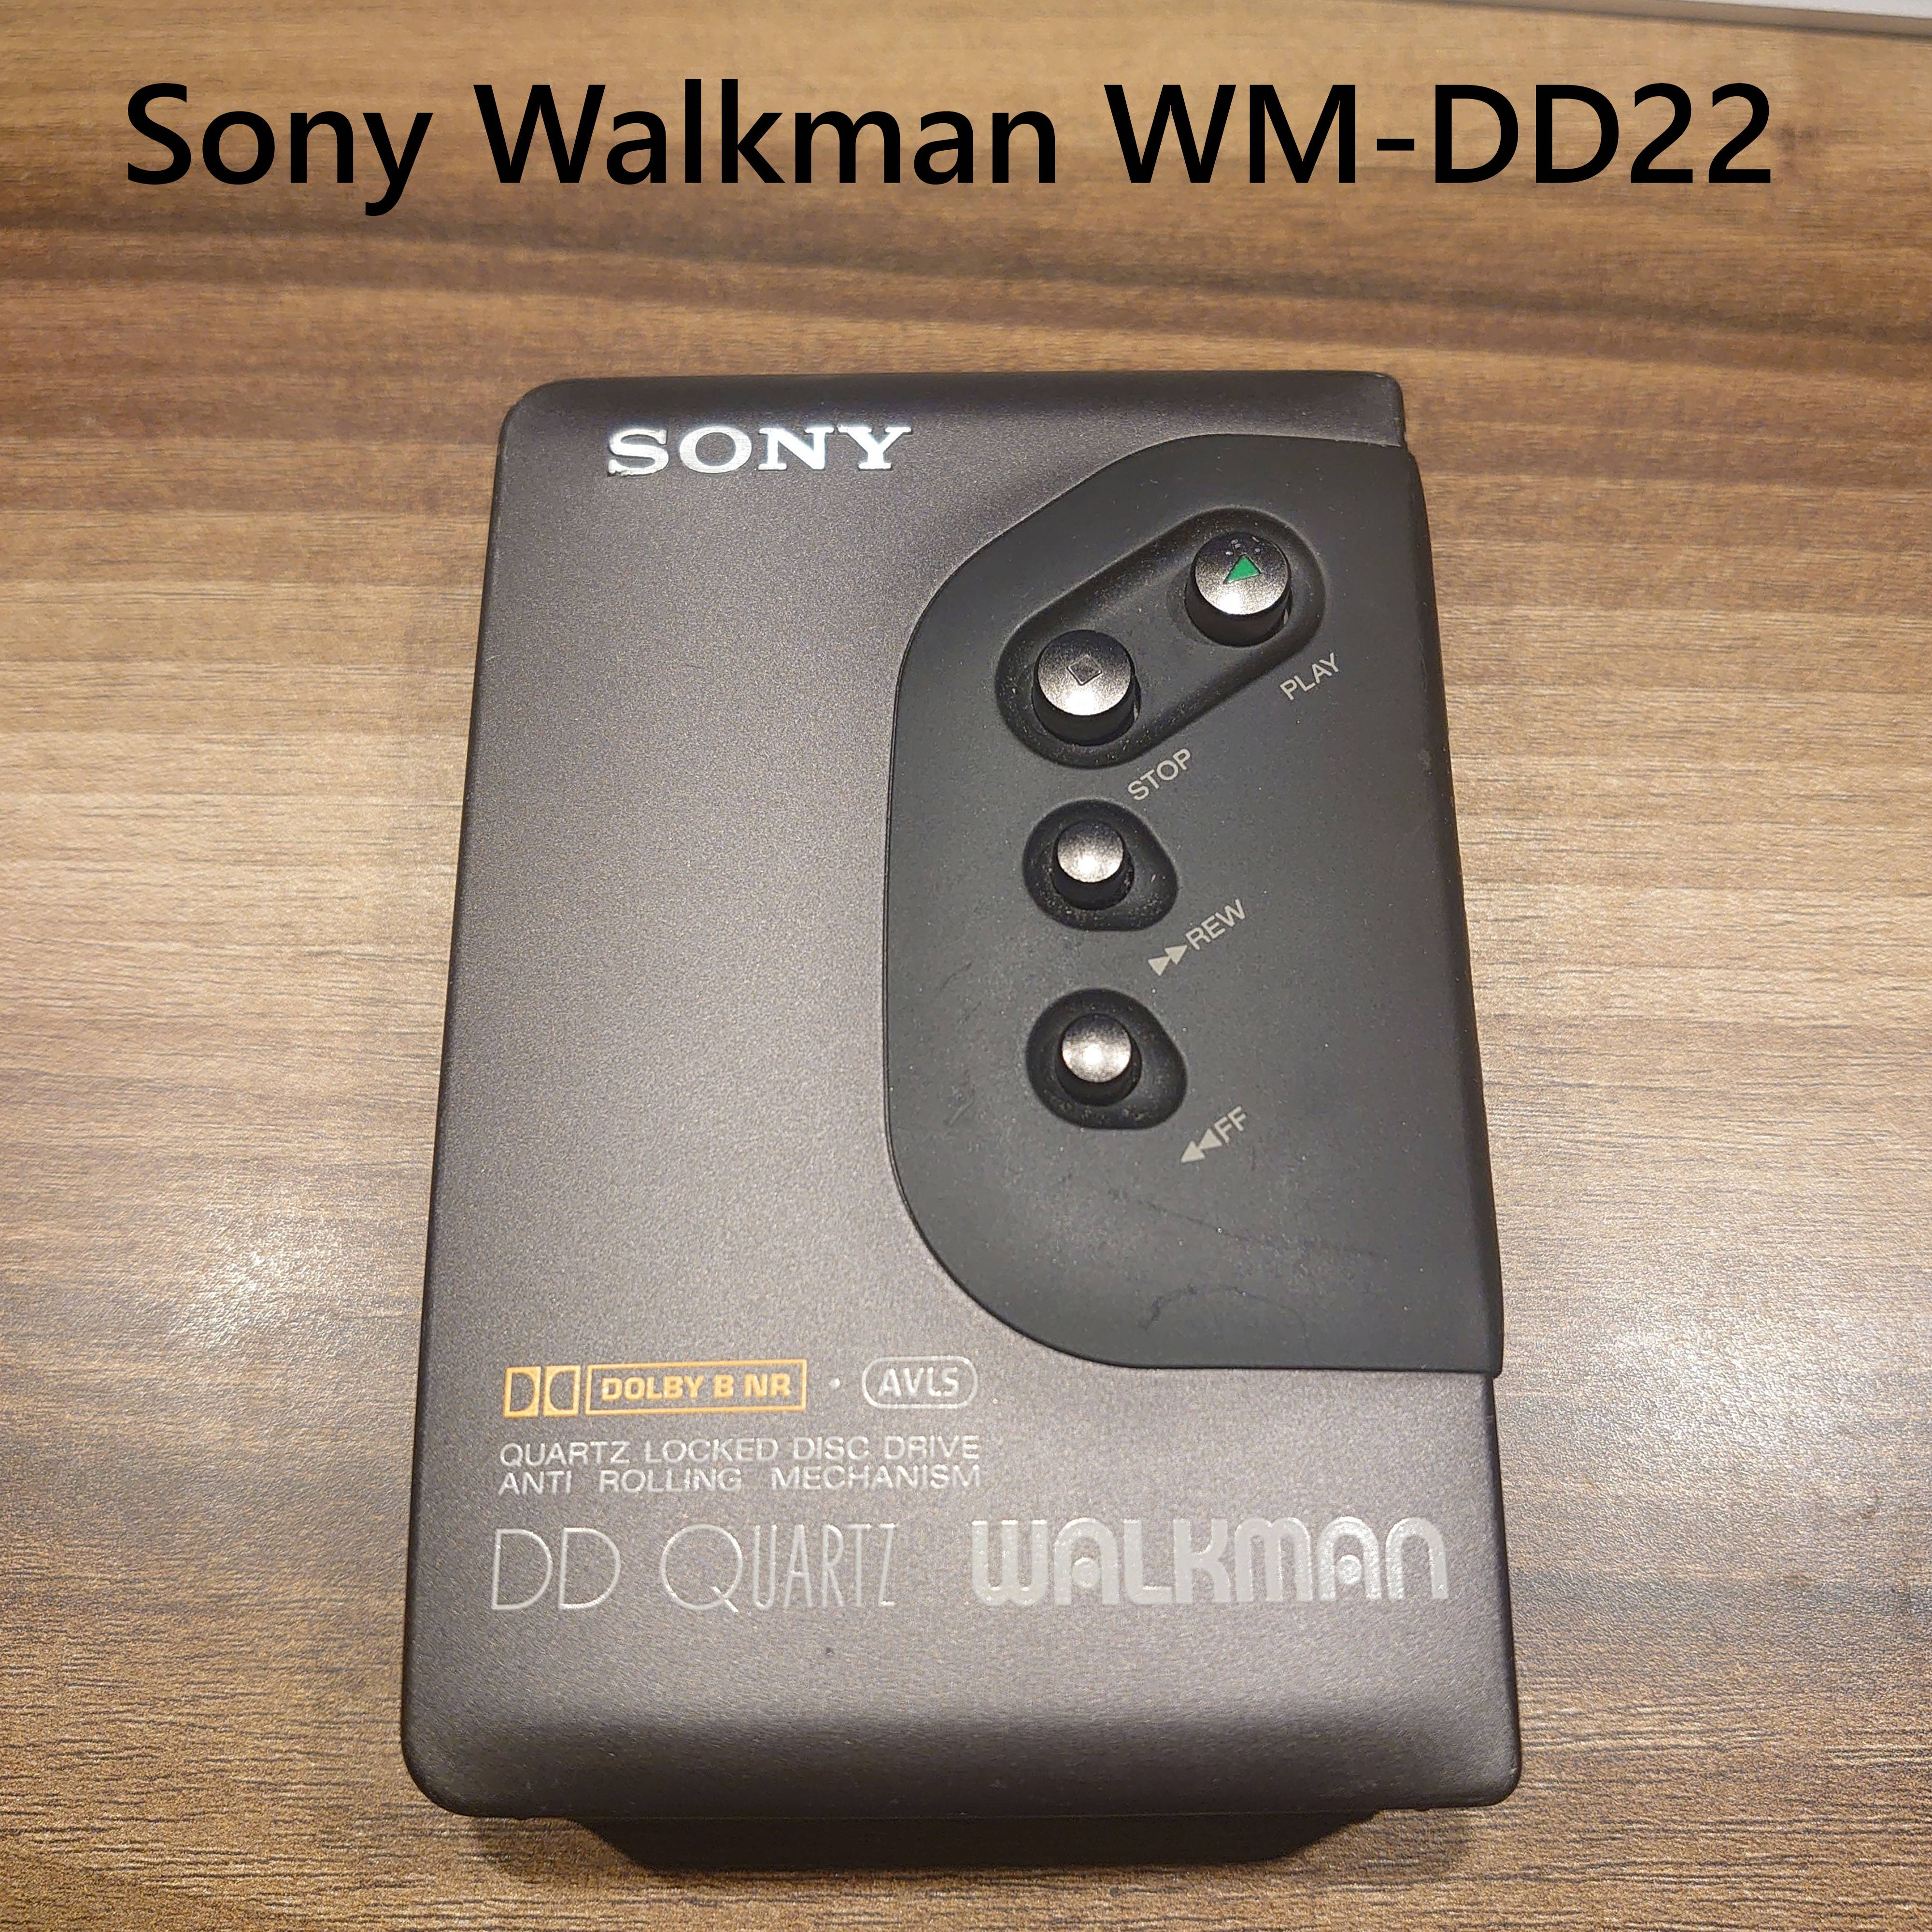 Sony WM-DD22